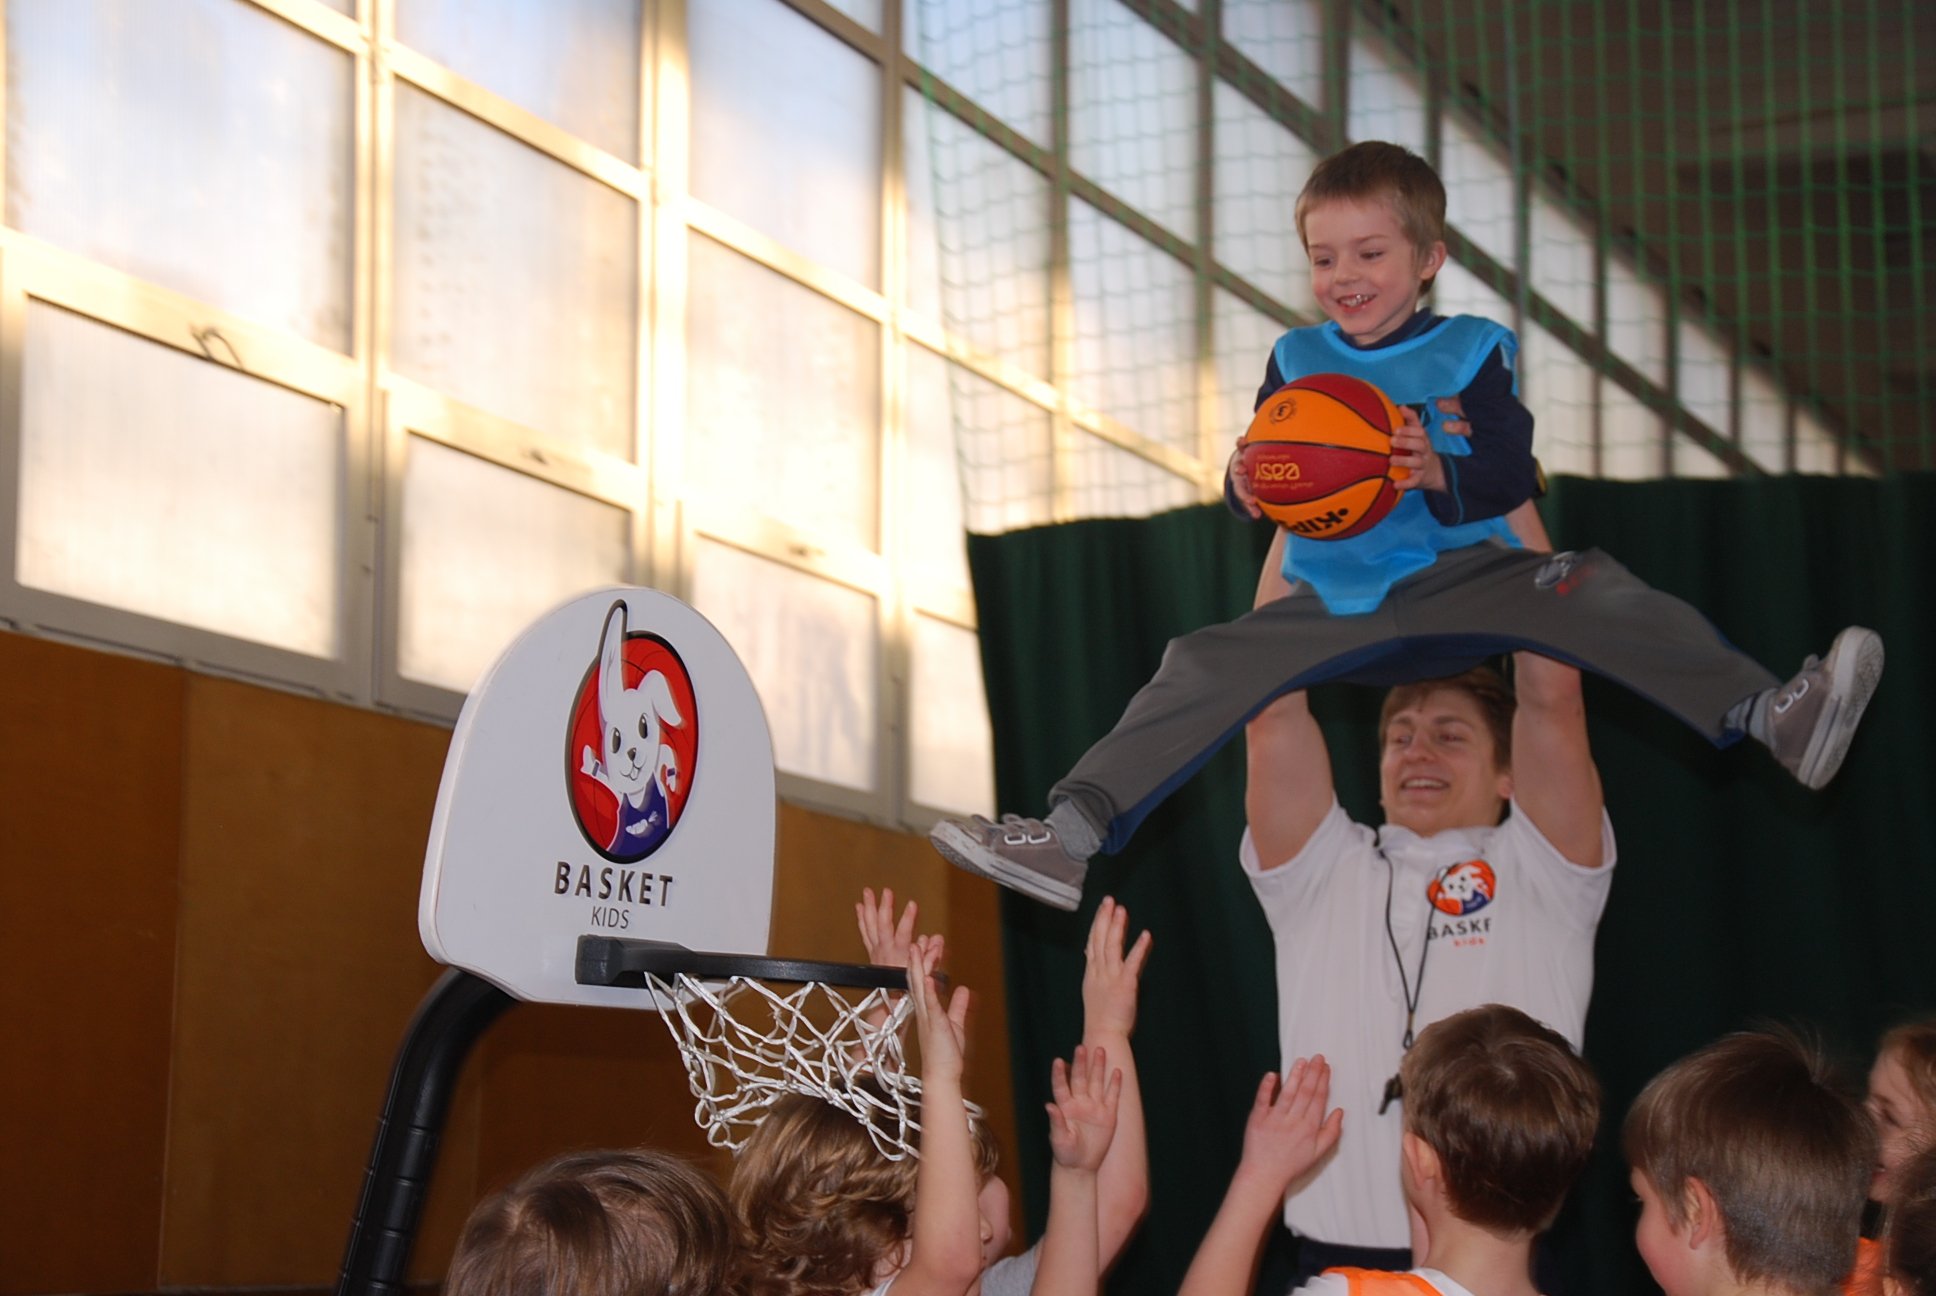 Basket Kids - zajęcia koszykówki dla dzieci